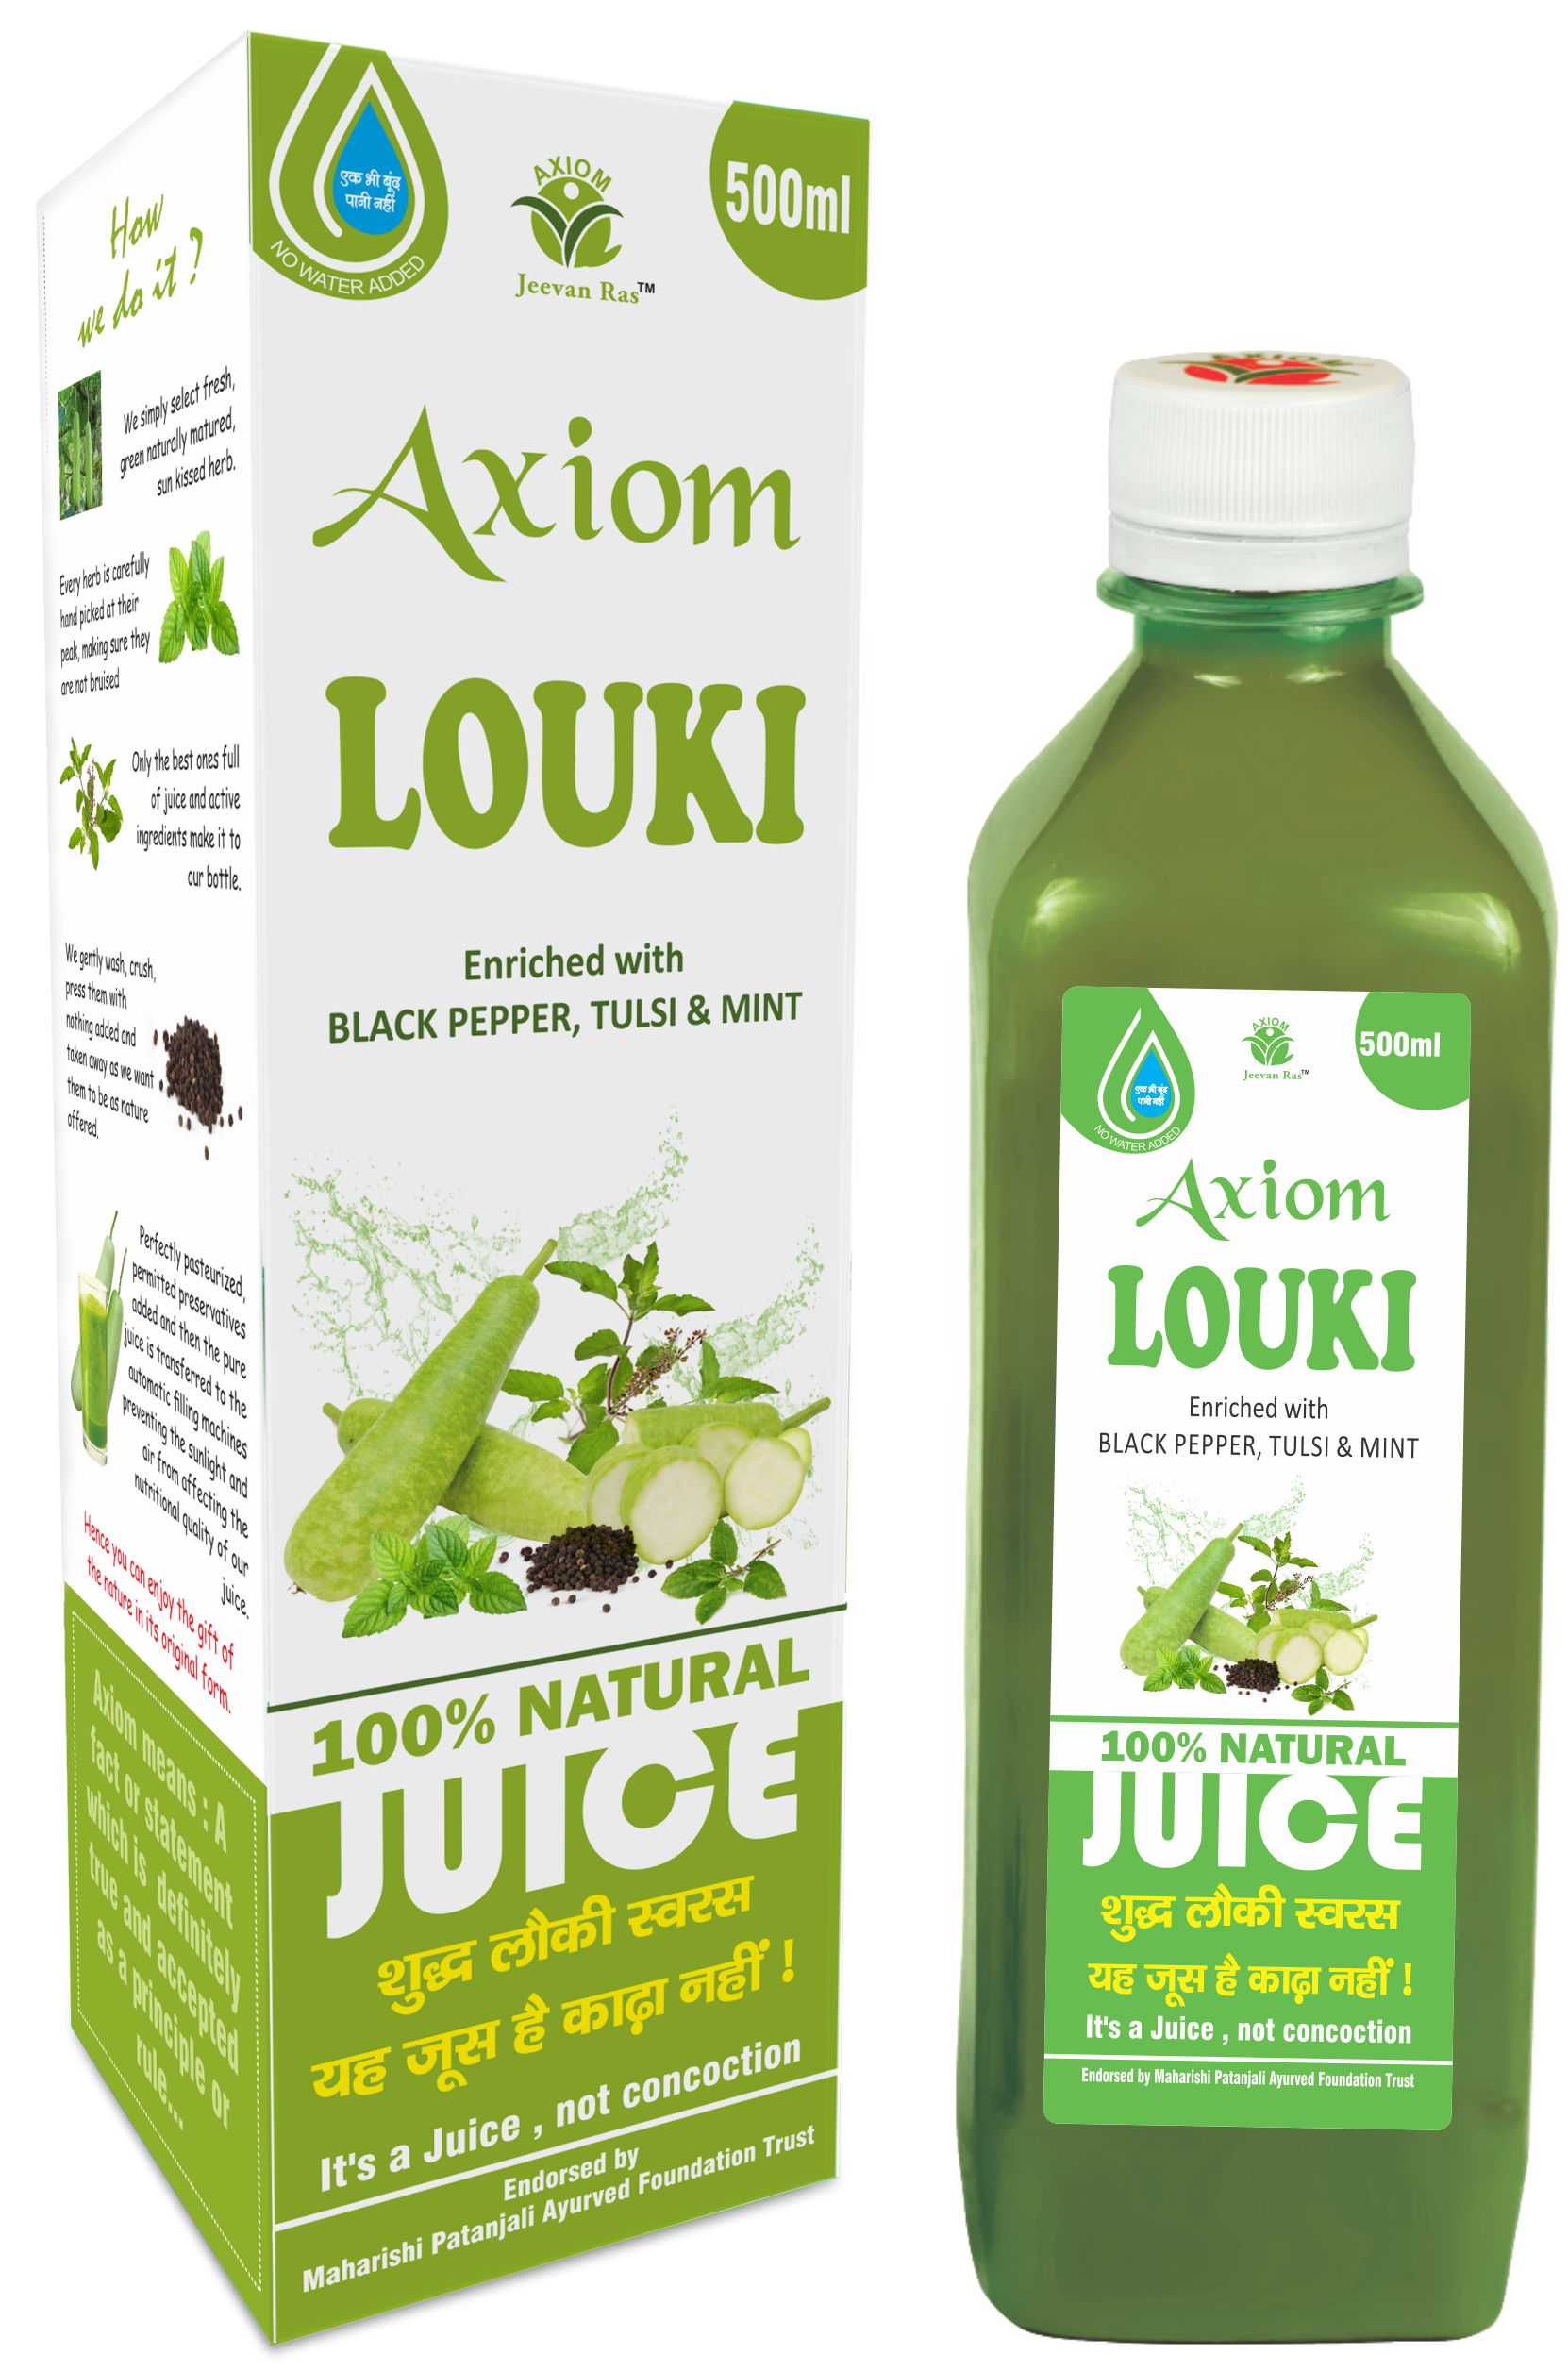 Buy Axiom Loki Swaras at Best Price Online